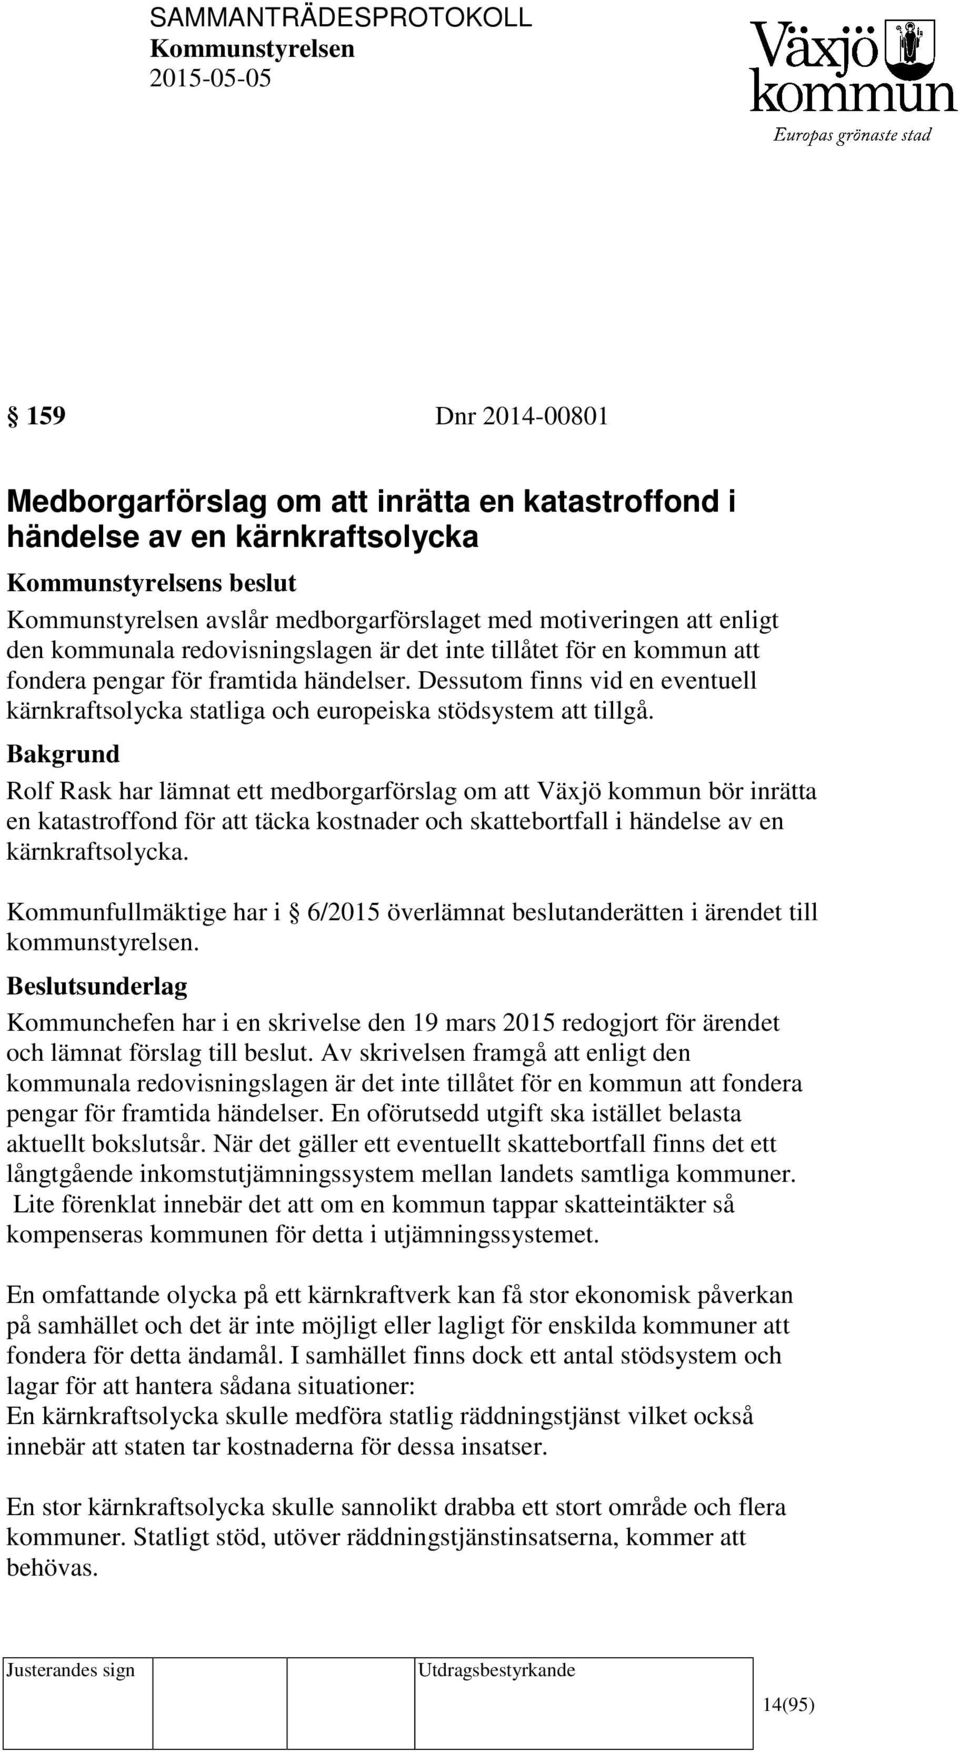 Rolf Rask har lämnat ett medborgarförslag om att Växjö kommun bör inrätta en katastroffond för att täcka kostnader och skattebortfall i händelse av en kärnkraftsolycka.